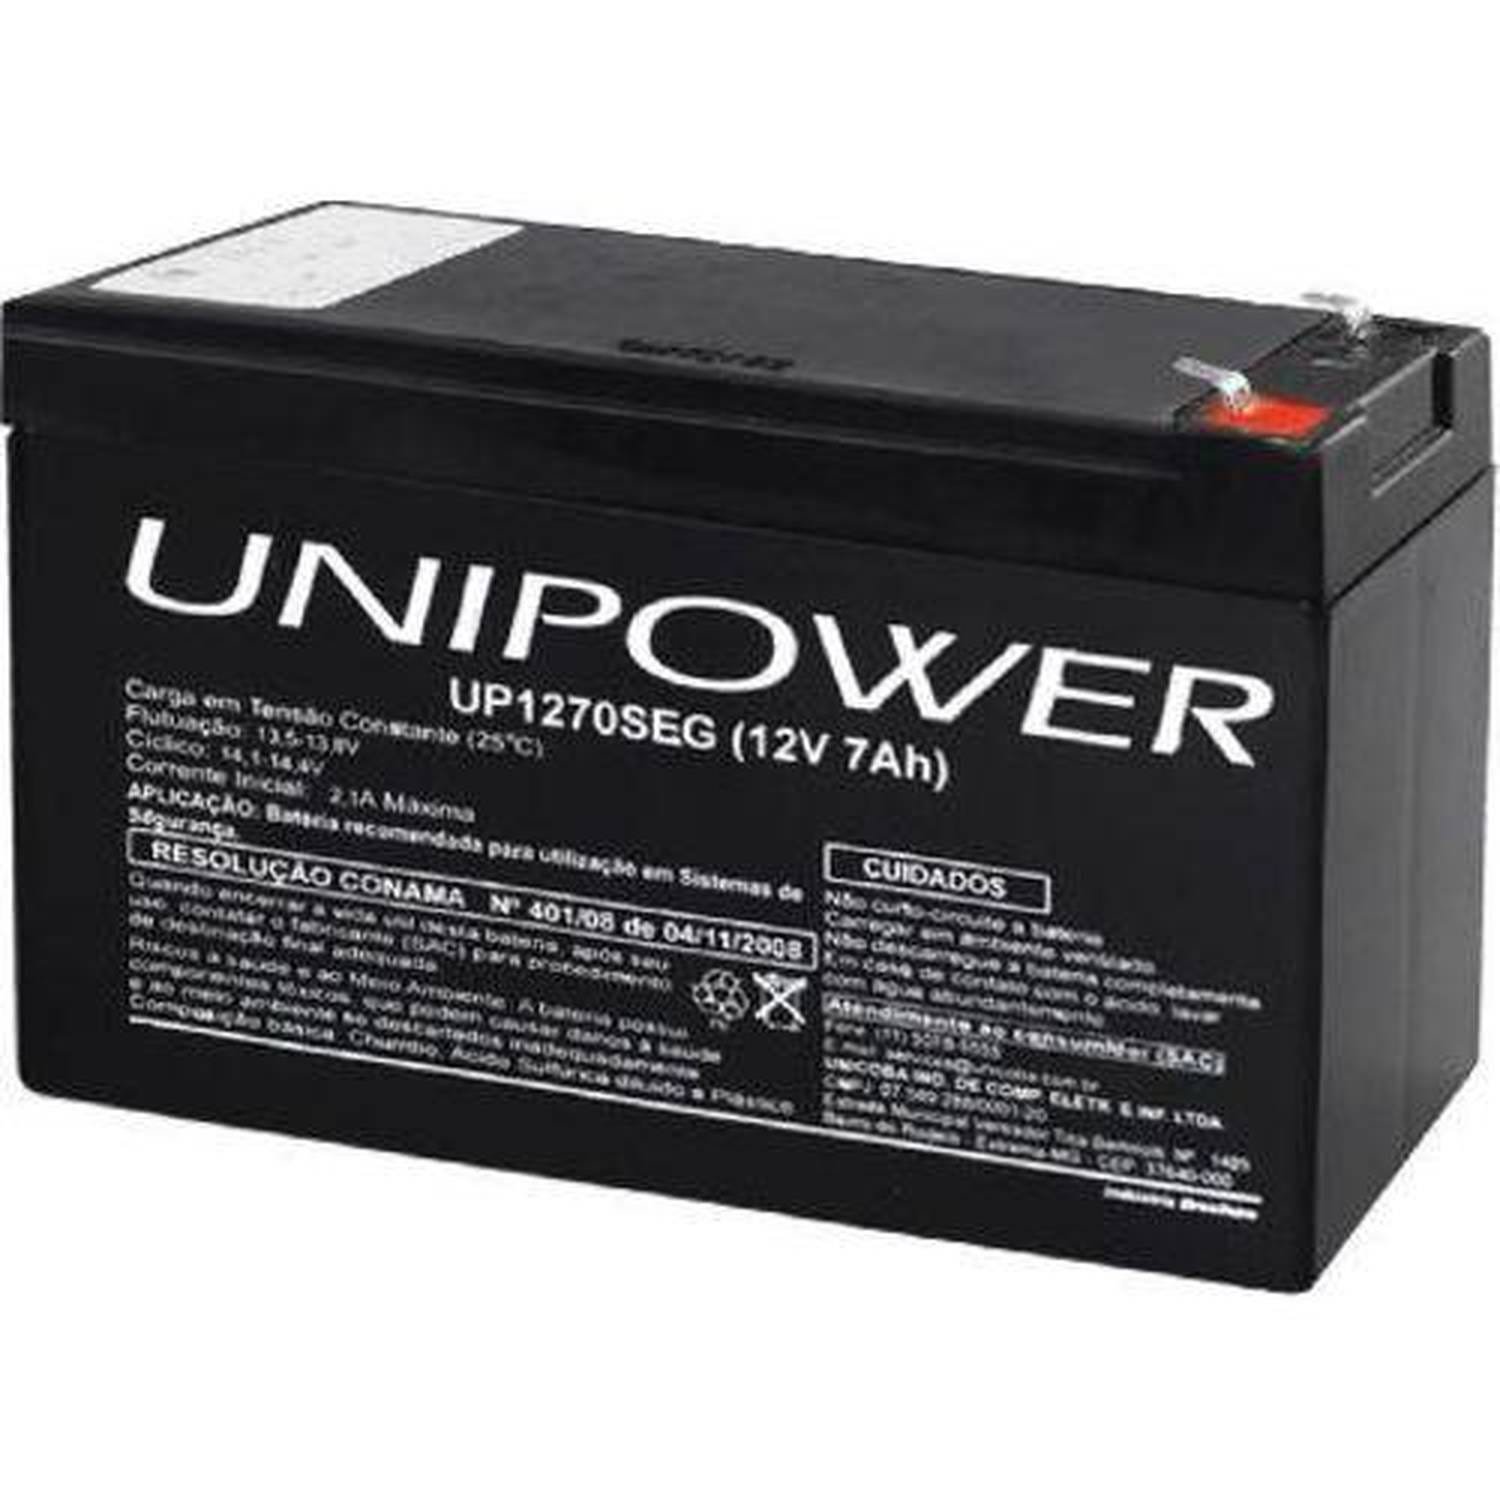 Bateria 12v 7,0 ah(up1270seg)f187, destinada ao mercado de segurança